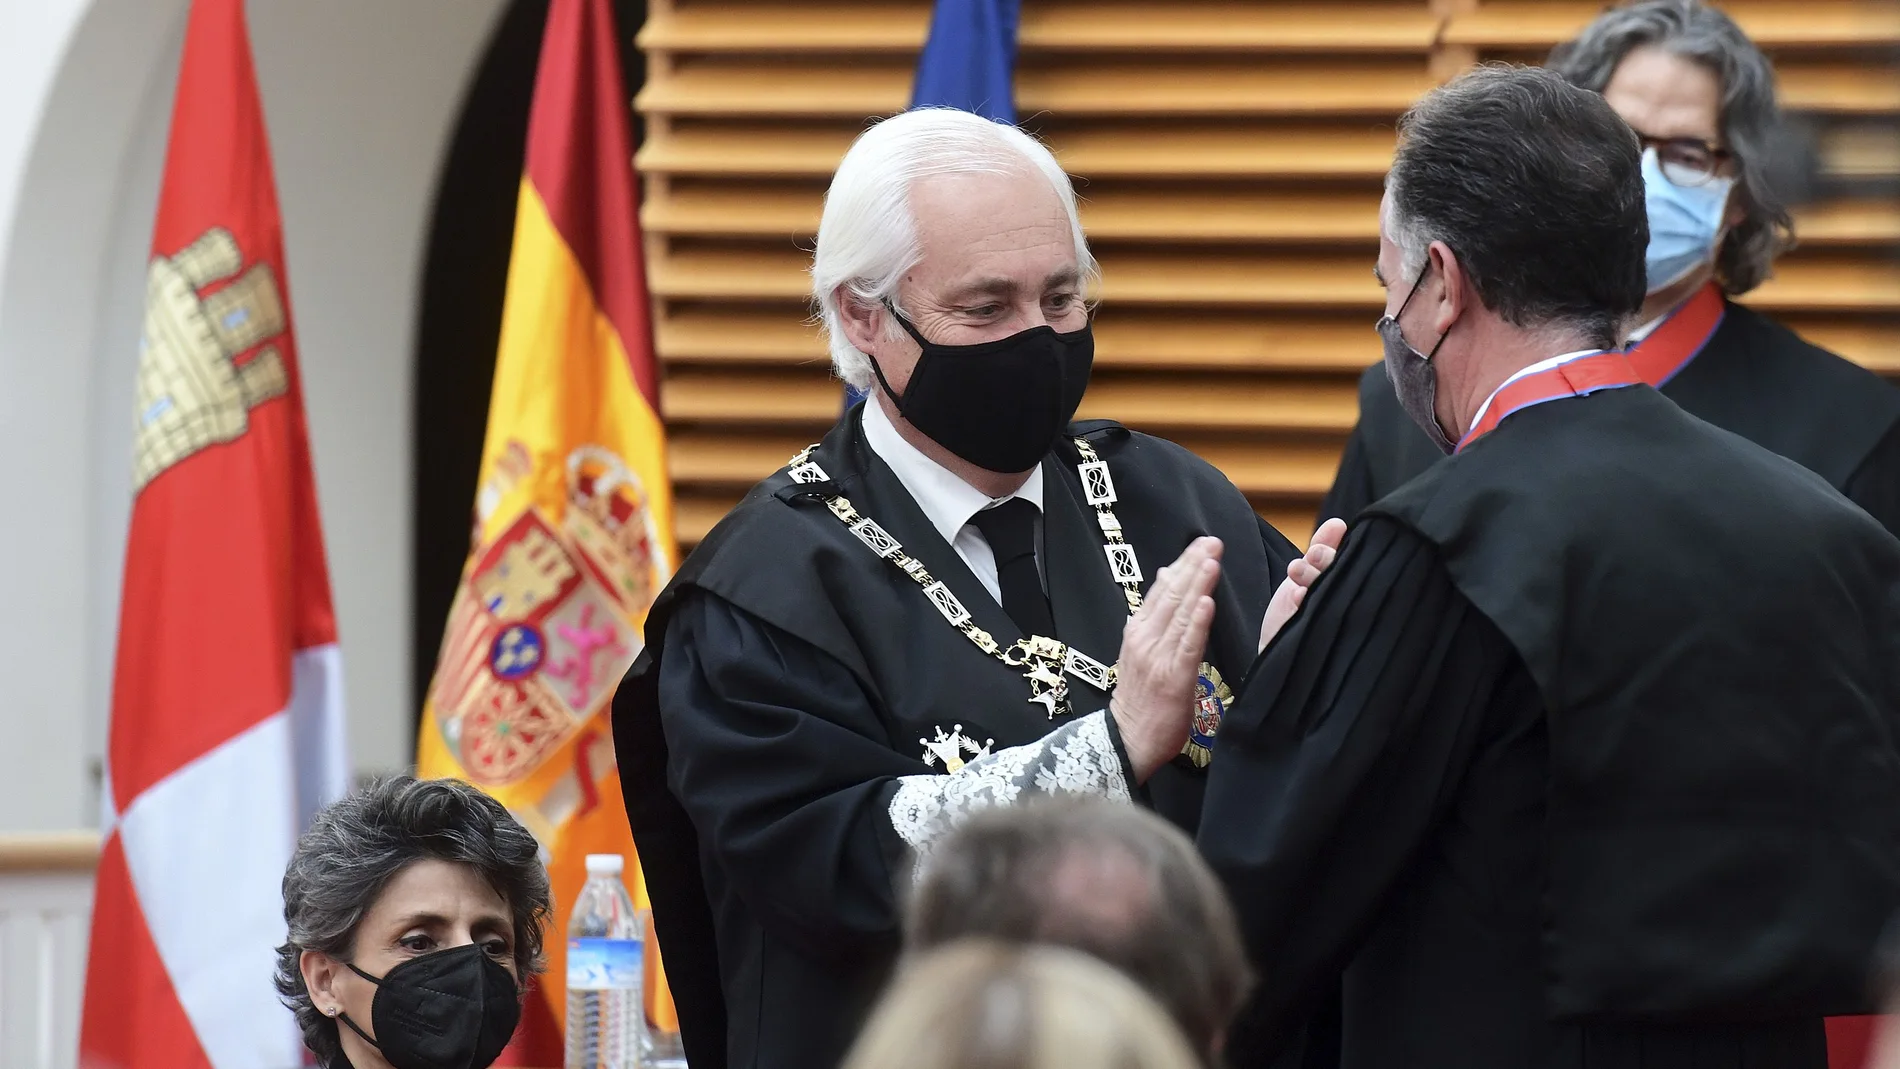 Acto de imposición de la Cruz Distinguida de 1ª Clase de la Orden de San Raimundo de Peñafort al presidente de la Audiencia Provincial de Burgos, Mauricio Muñoz